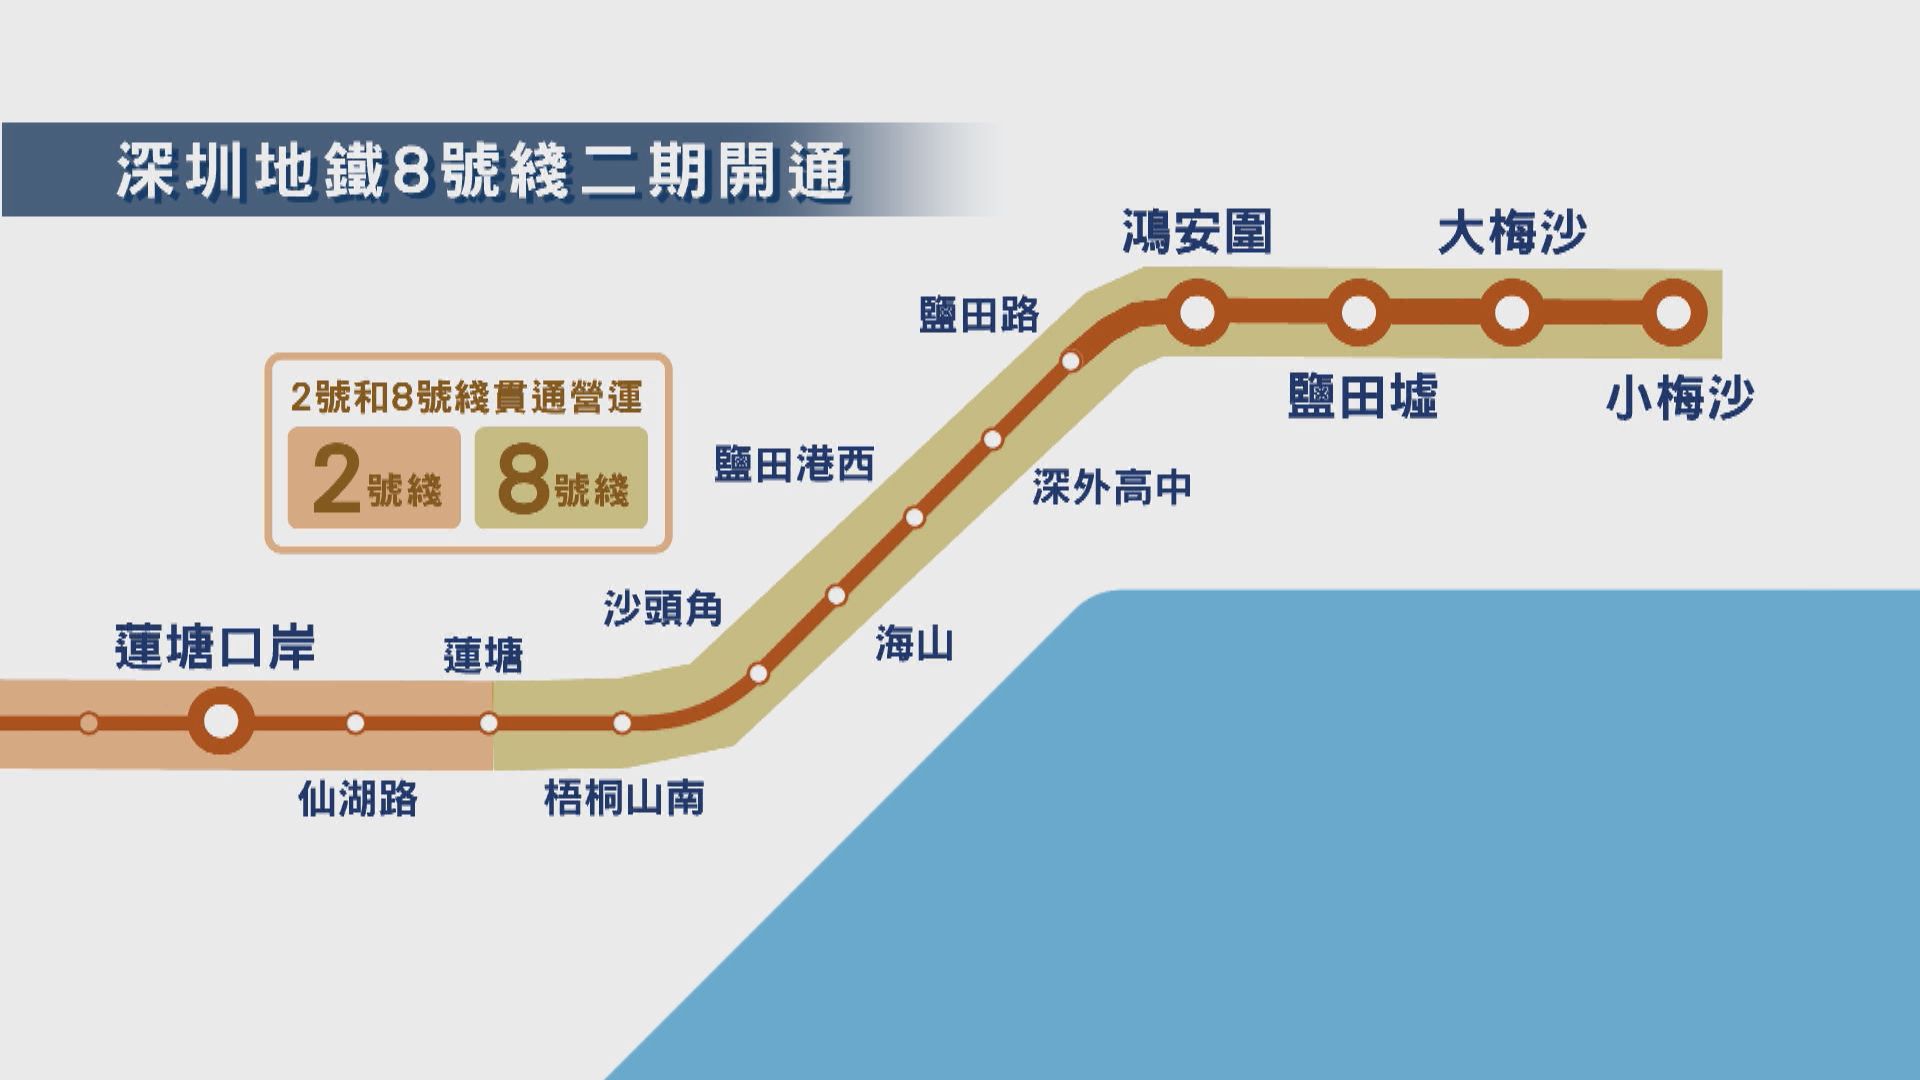 深圳地鐵8號綫二期開通 四個新站各具特色